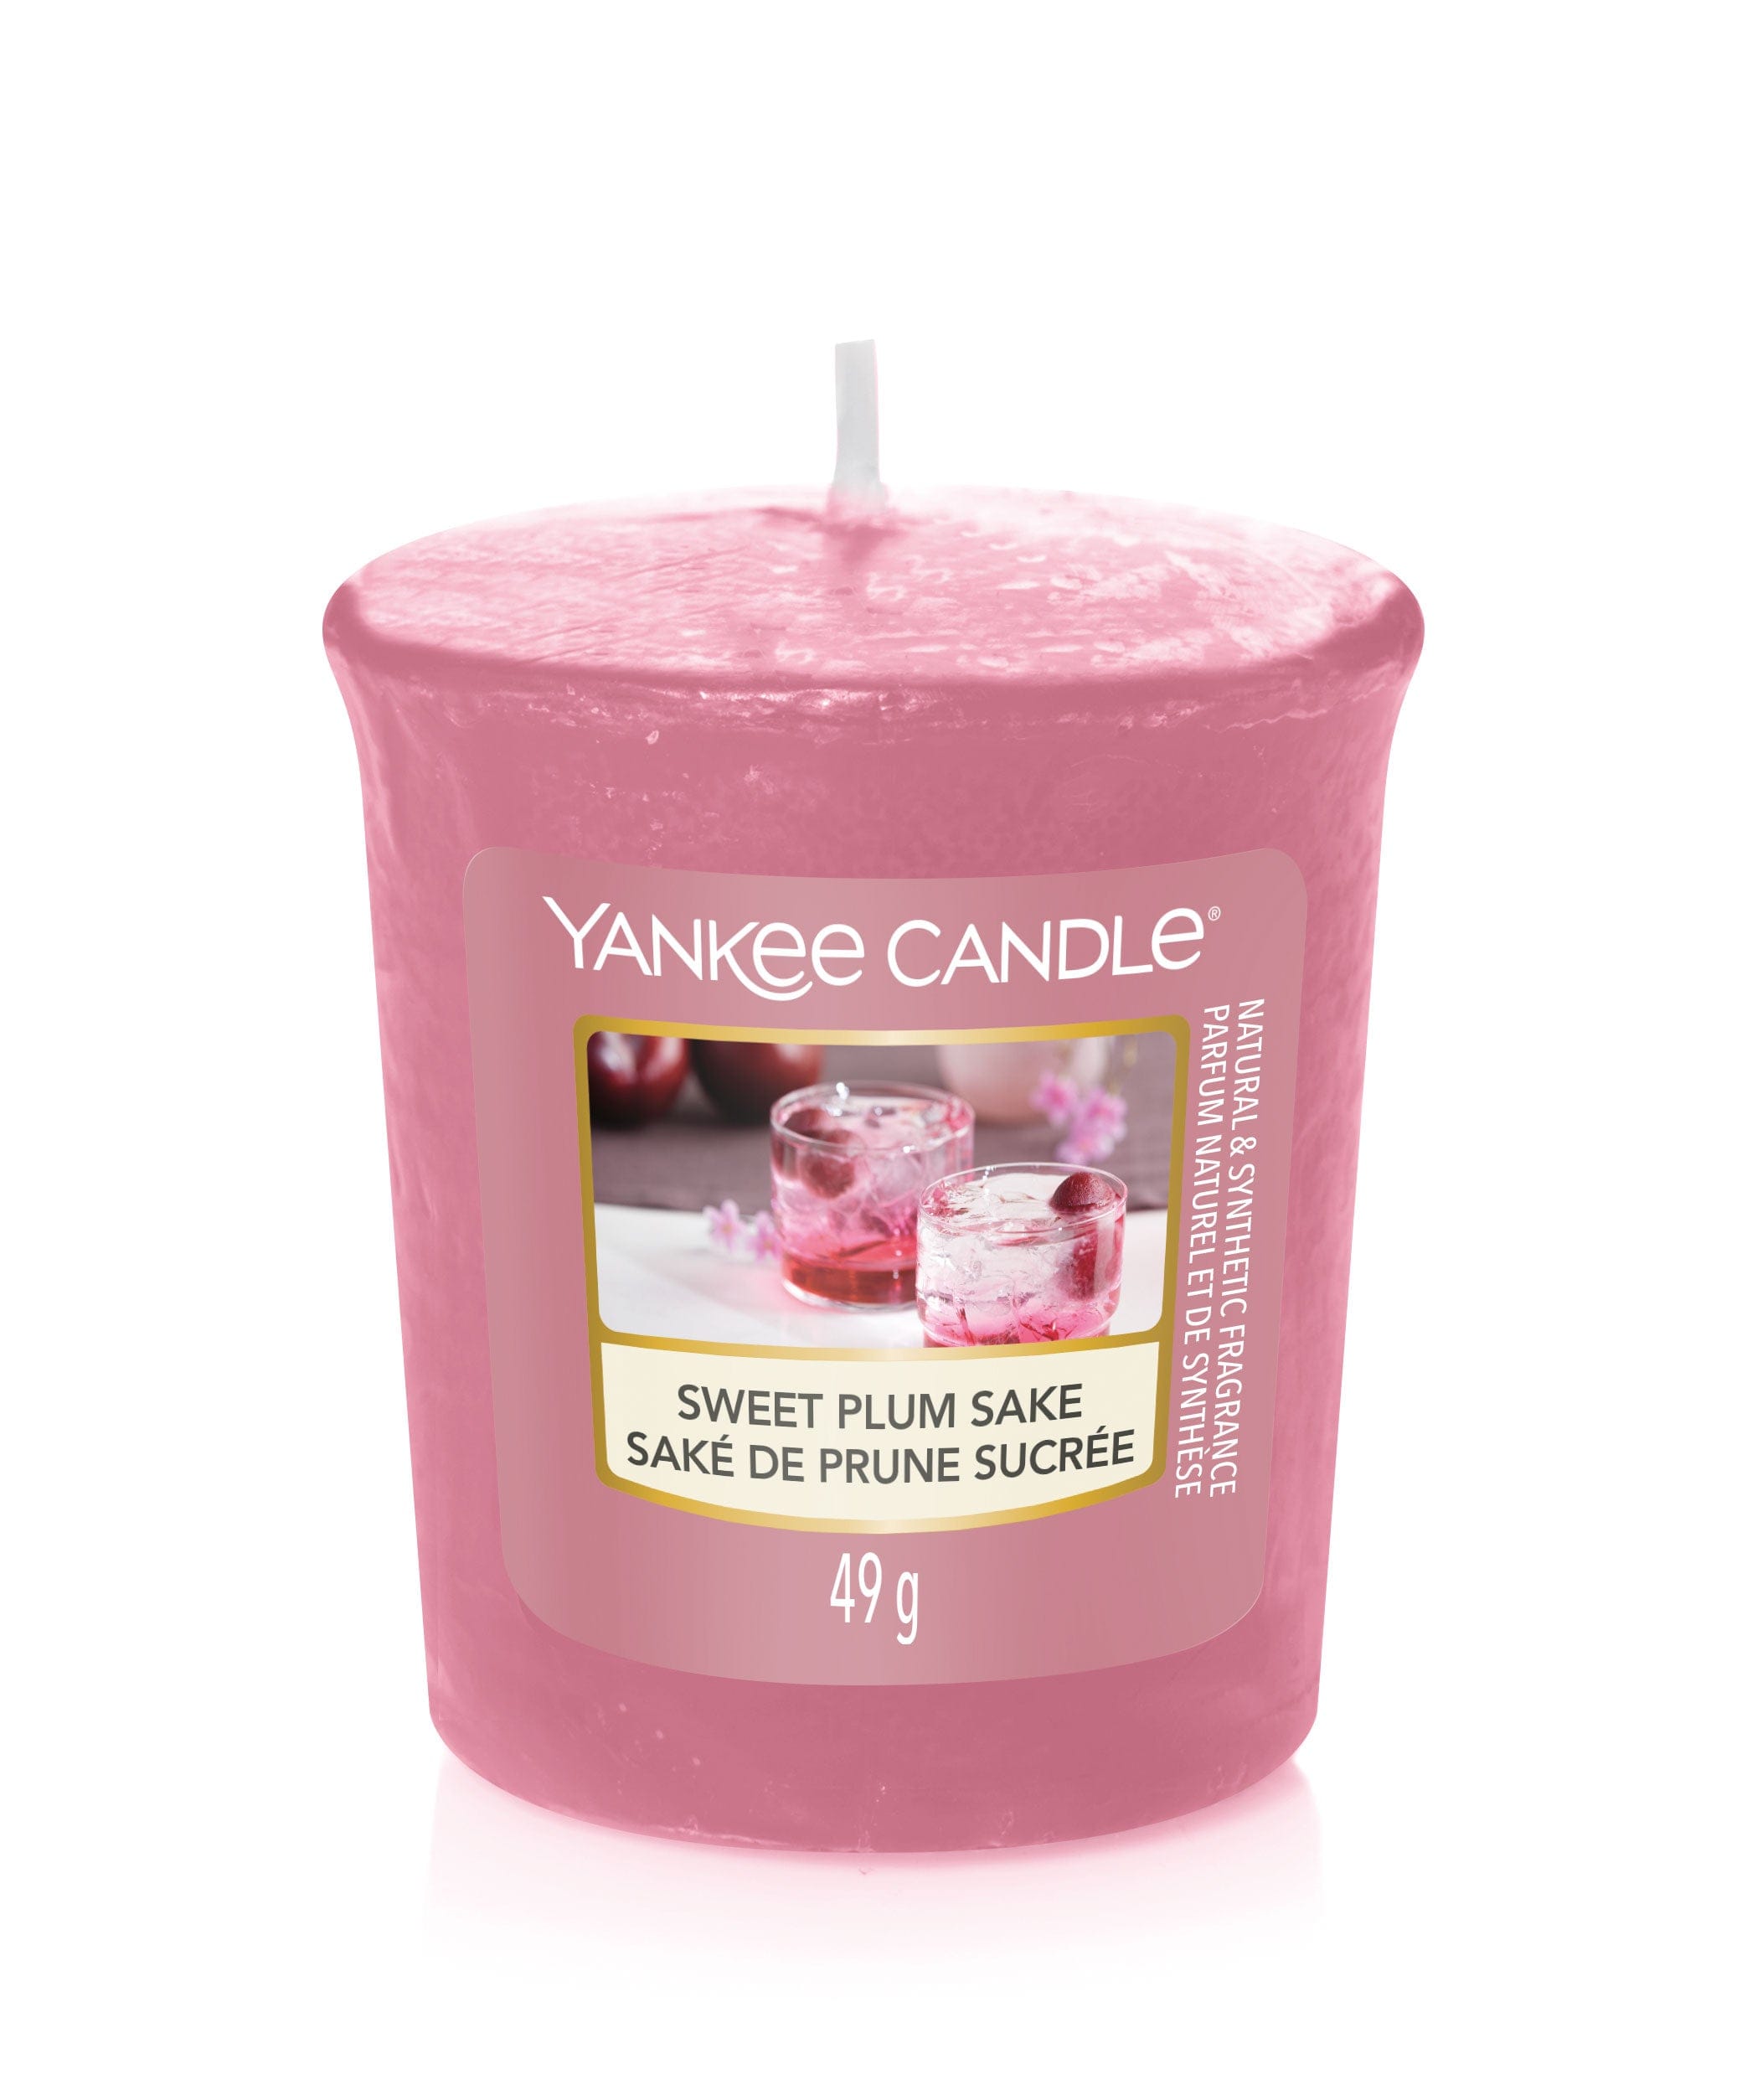 Yankee Candle Votive Candle Yankee Candle Votive Sampler - Sweet Plum Sake